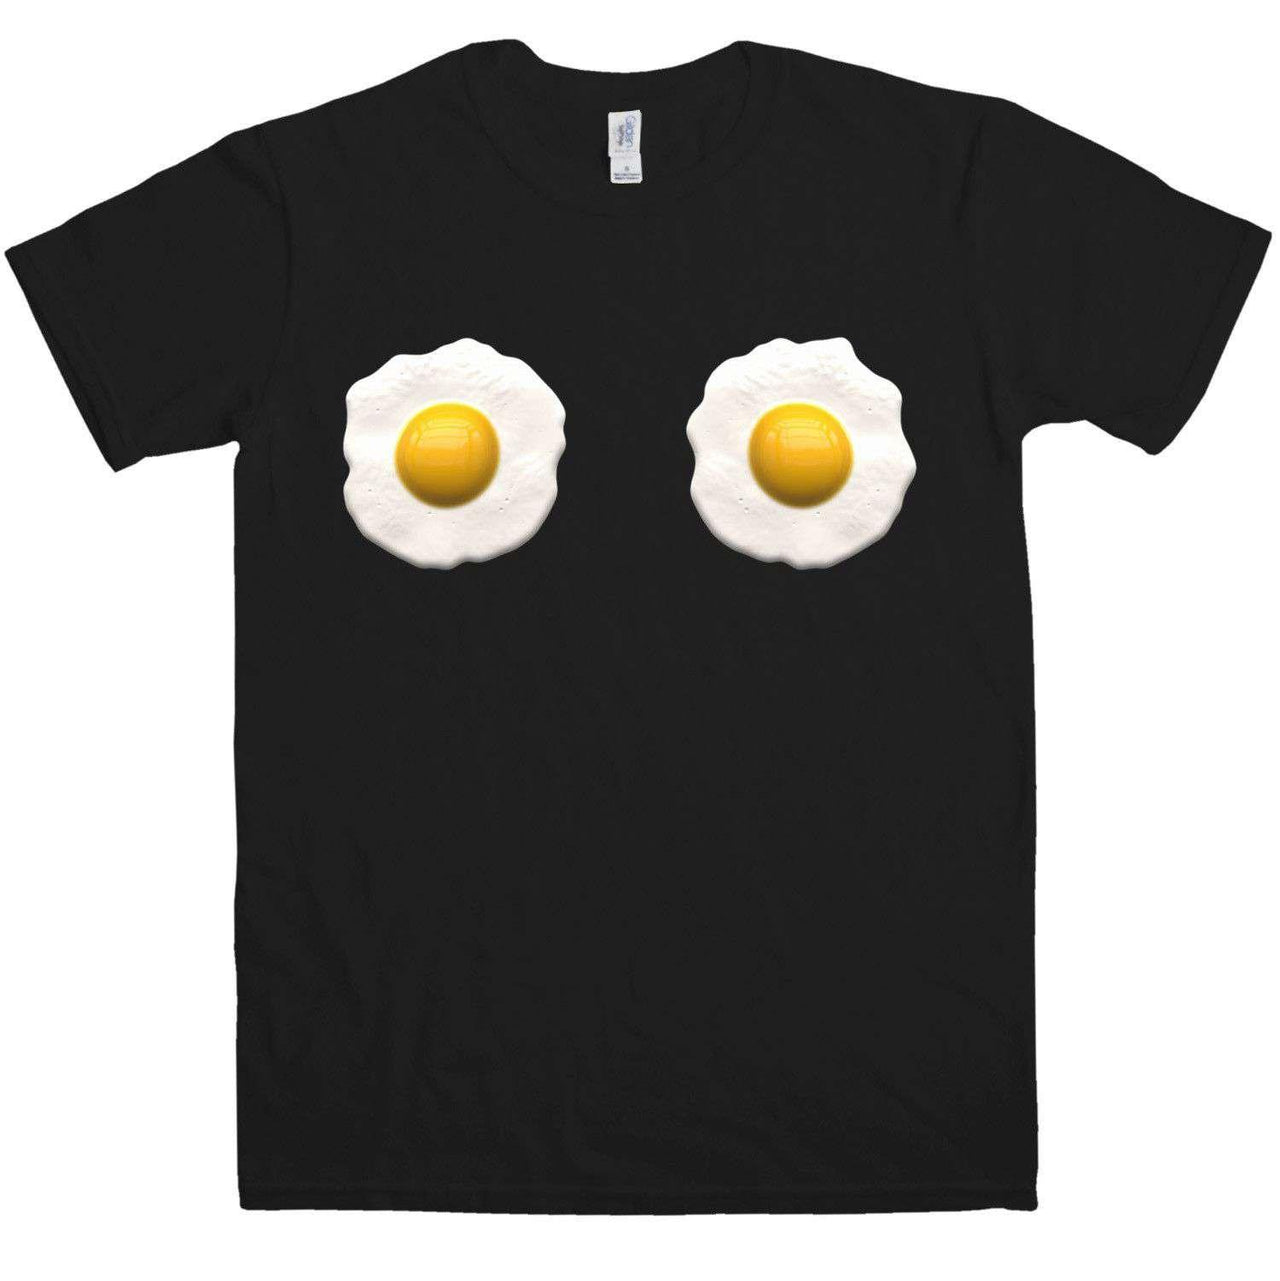 Fried Eggs T-Shirt For Men 8Ball